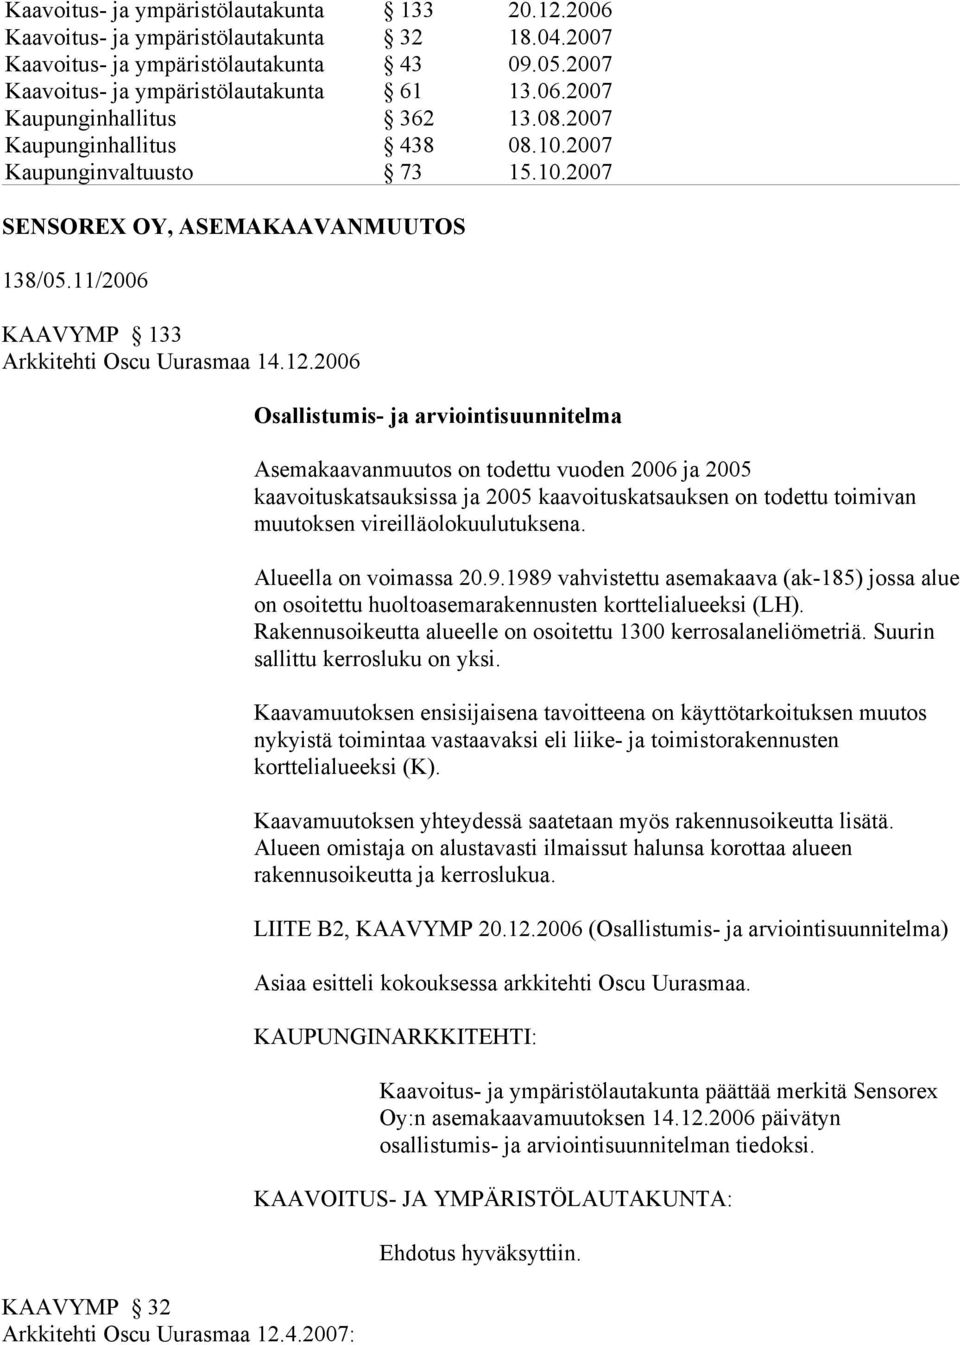 2006 KAAVYMP 32 Arkkitehti Oscu Uurasmaa 12.4.